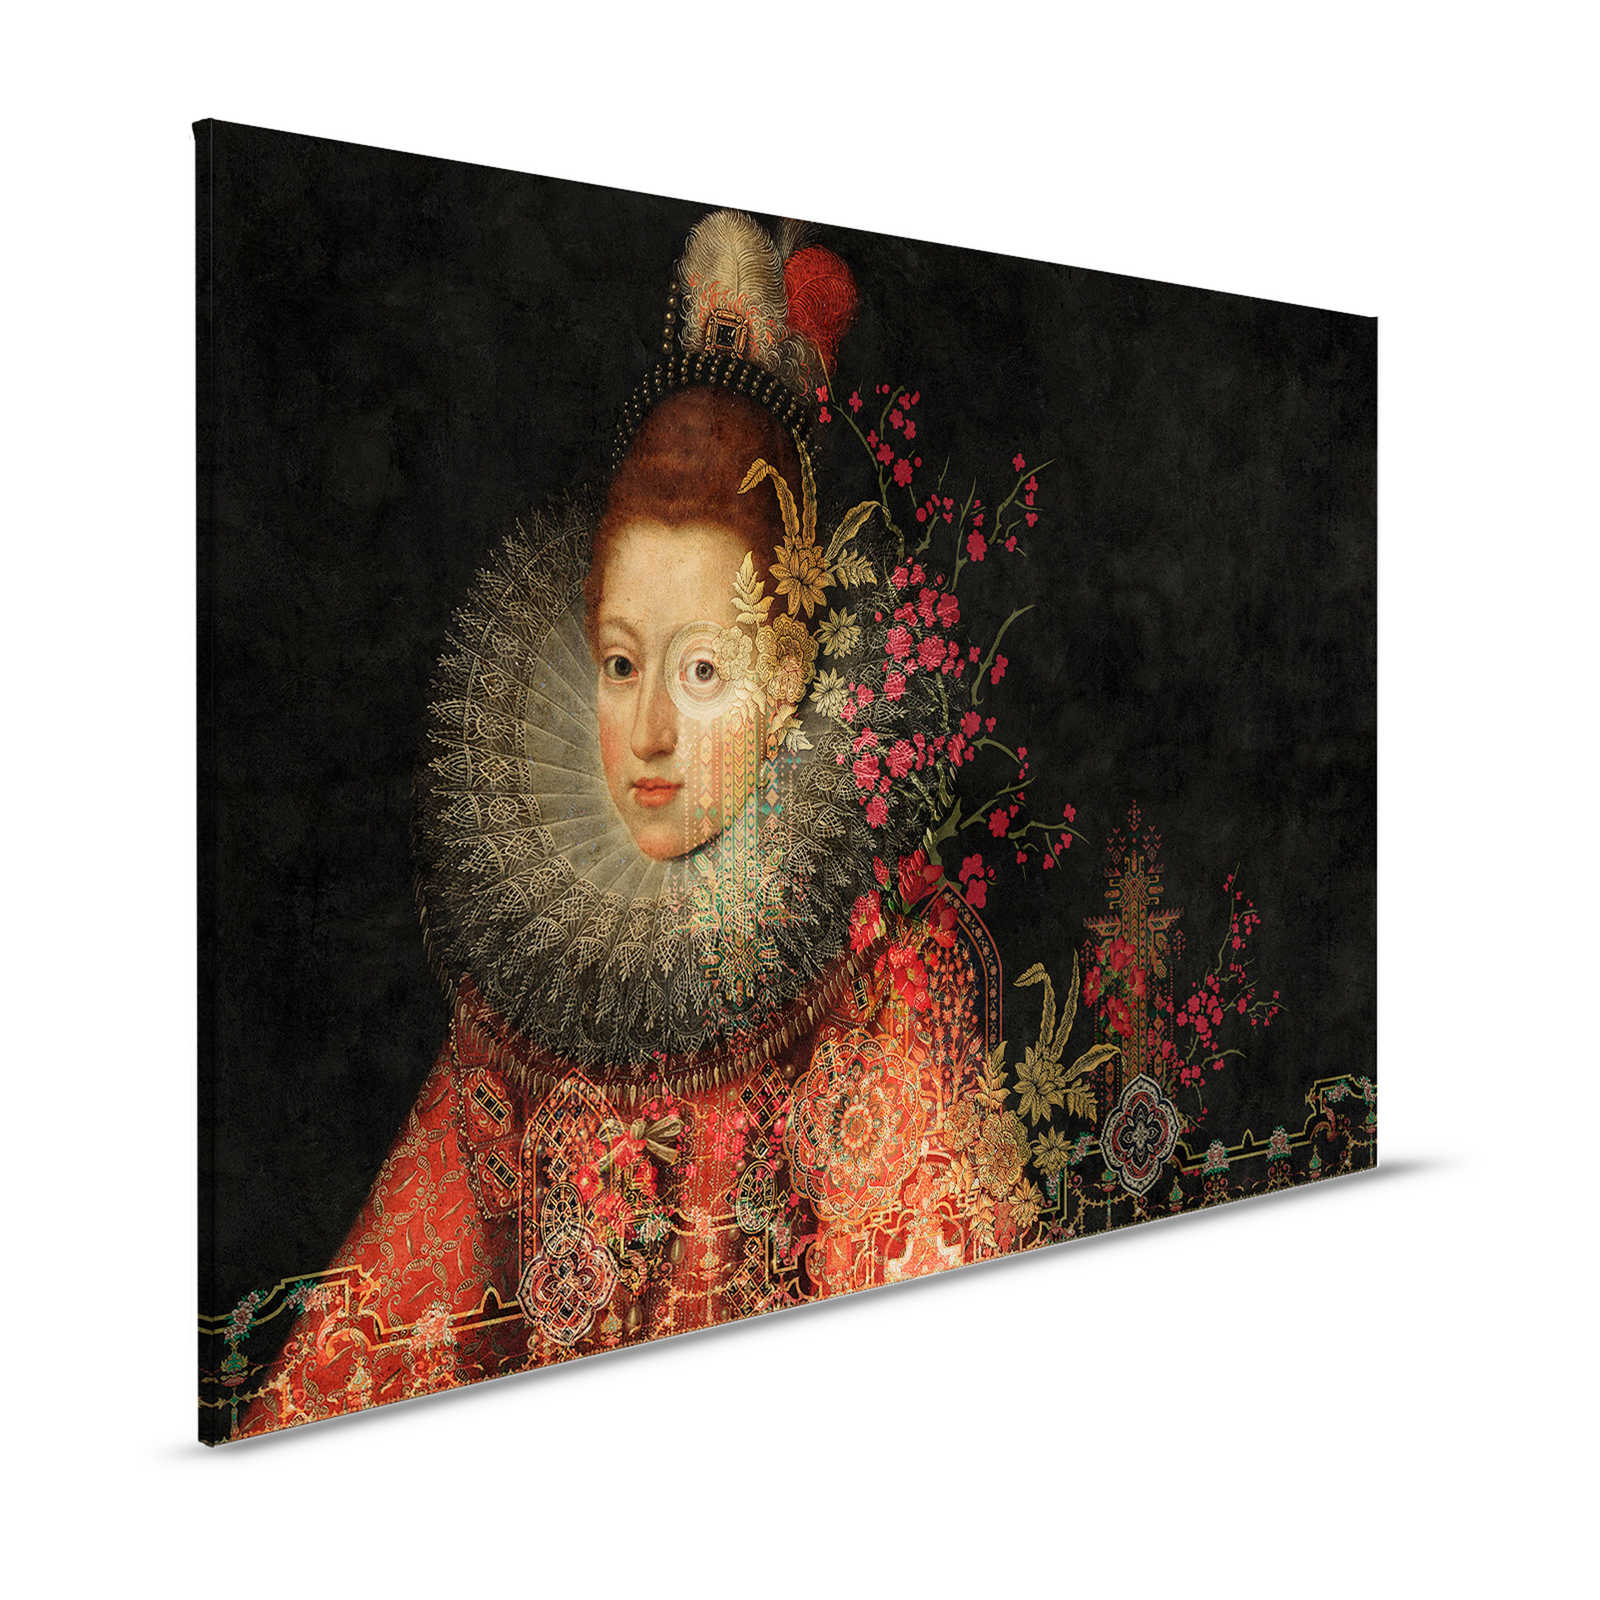 Nella Galleria 1 - Quadro su tela Quadri classici e fiori Grafica - 1,20 m x 0,80 m
